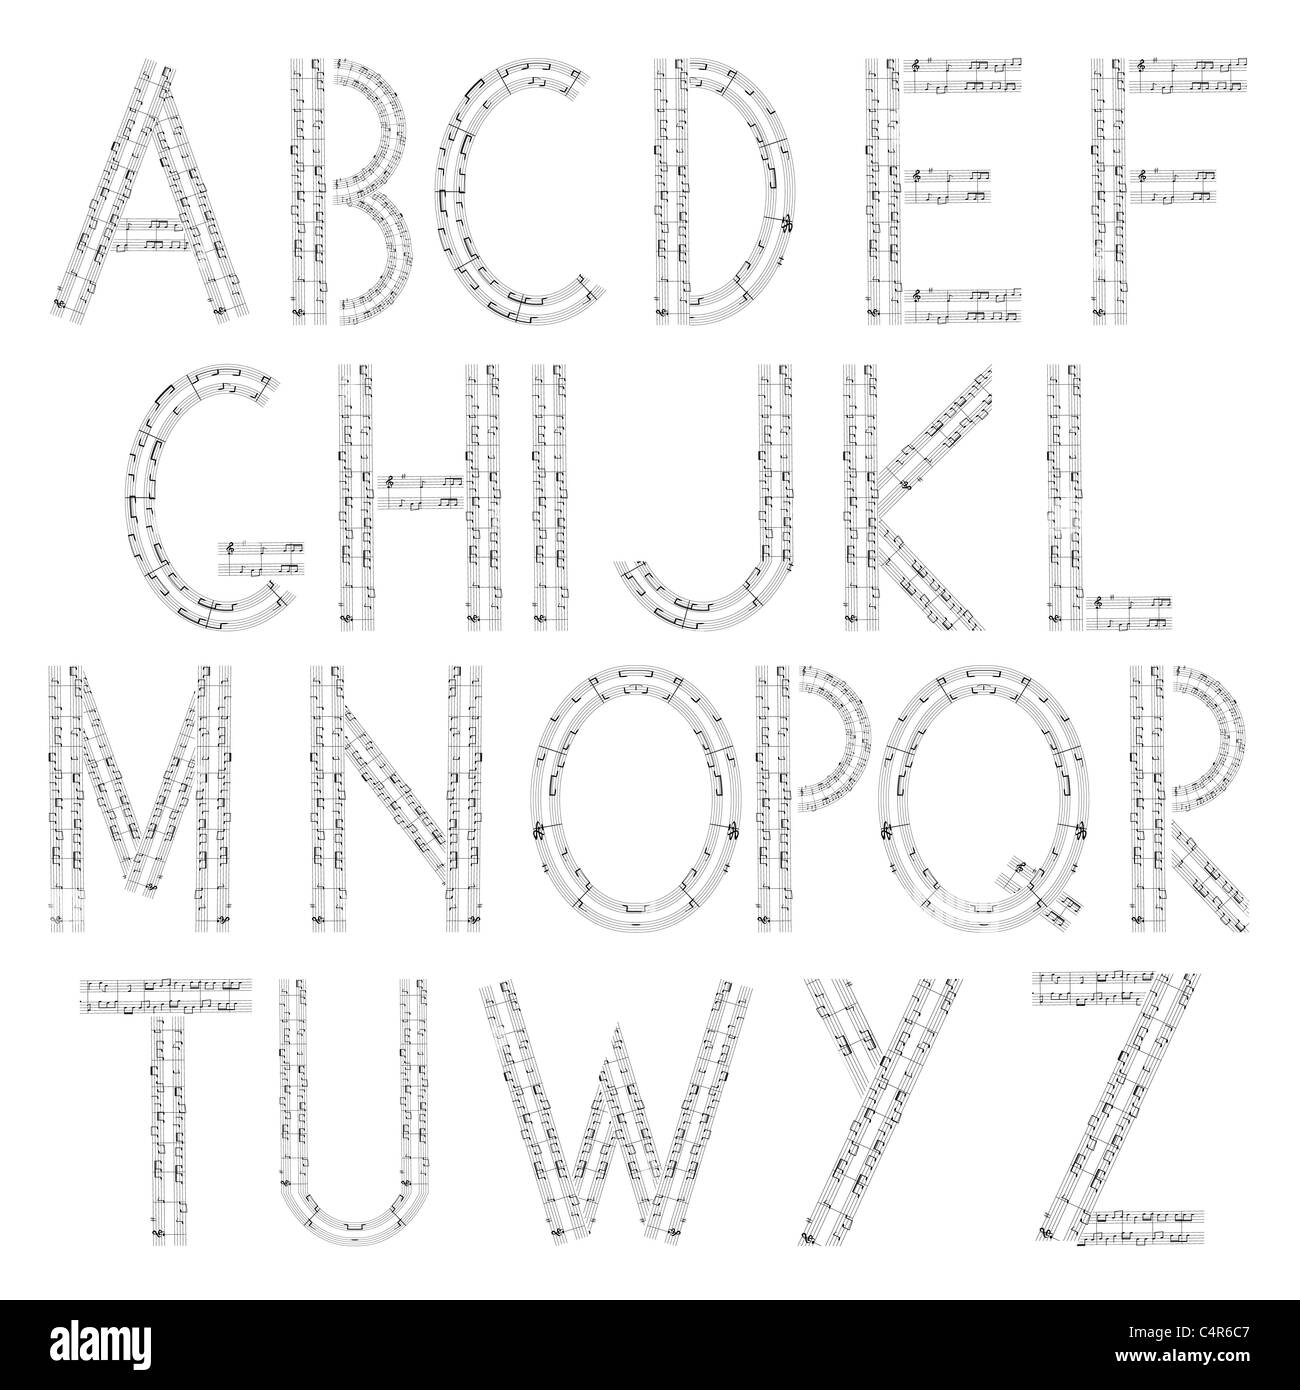 Musikalischen Alphabets, Siolated und gruppierten Objekten auf weißem Hintergrund Stockfoto